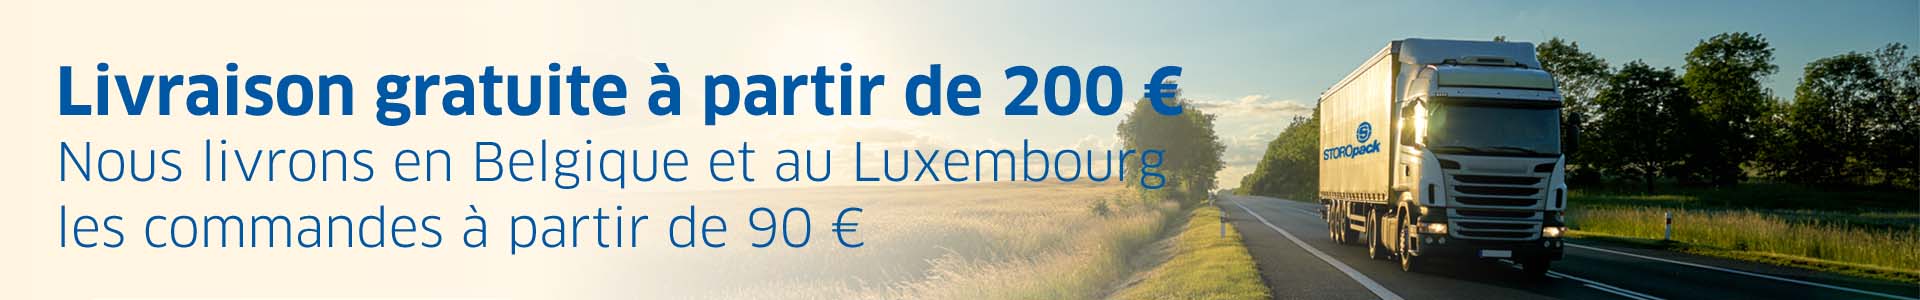 Livraison gratuite à partir de 200 €. Nous livrons en Belgique et au Luxembourg les commandes à partir de 90 €